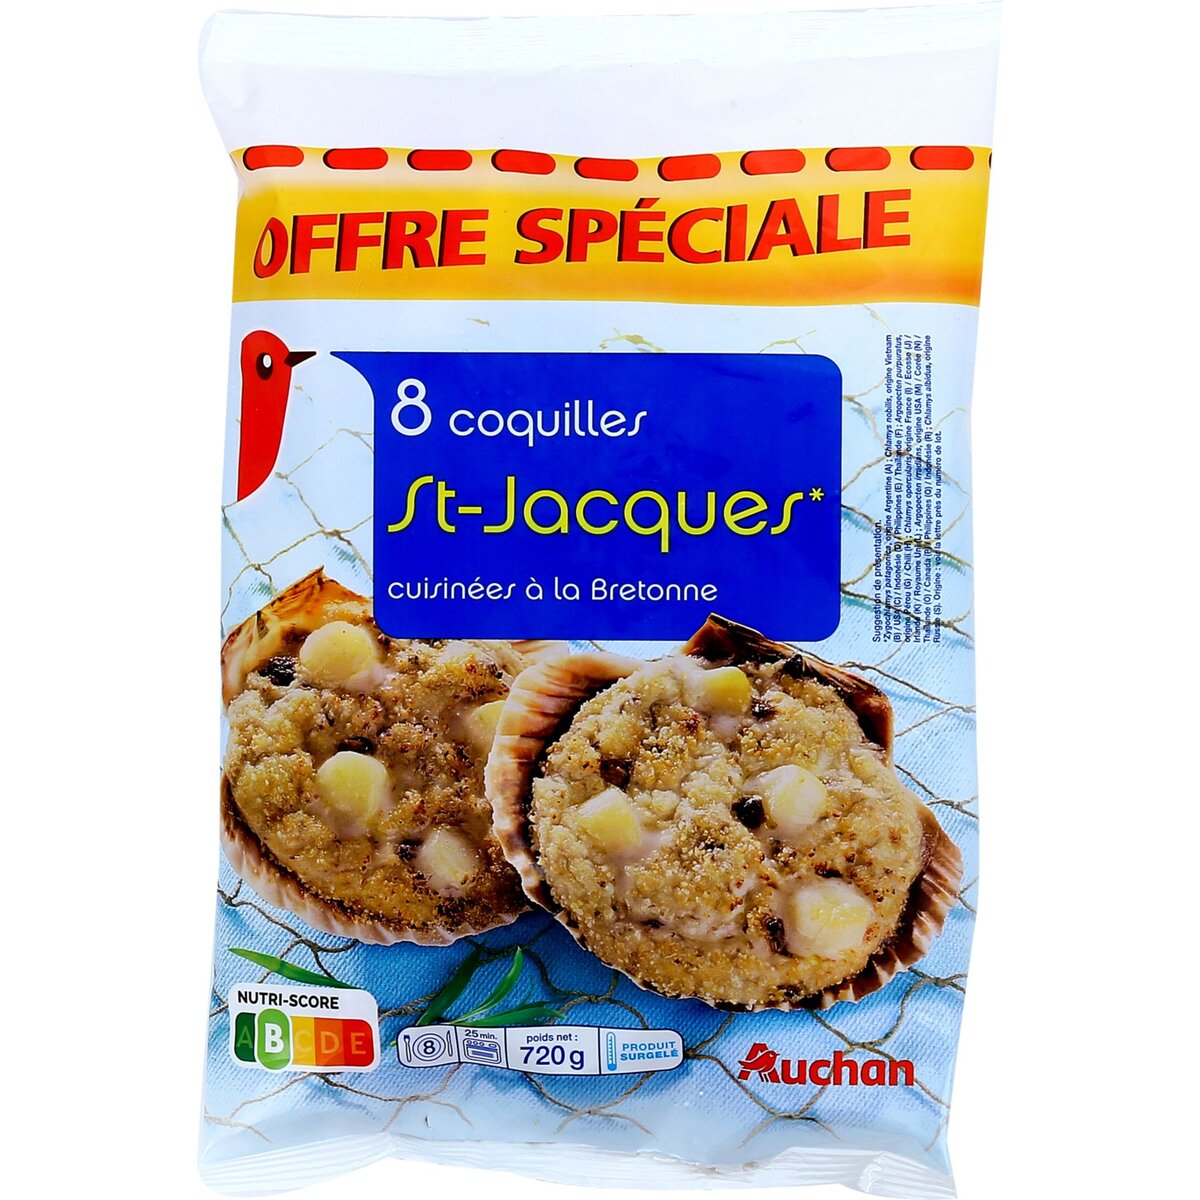 AUCHAN Coquille Saint Jacques cuisné à la Bretonne 8 pièces 720g